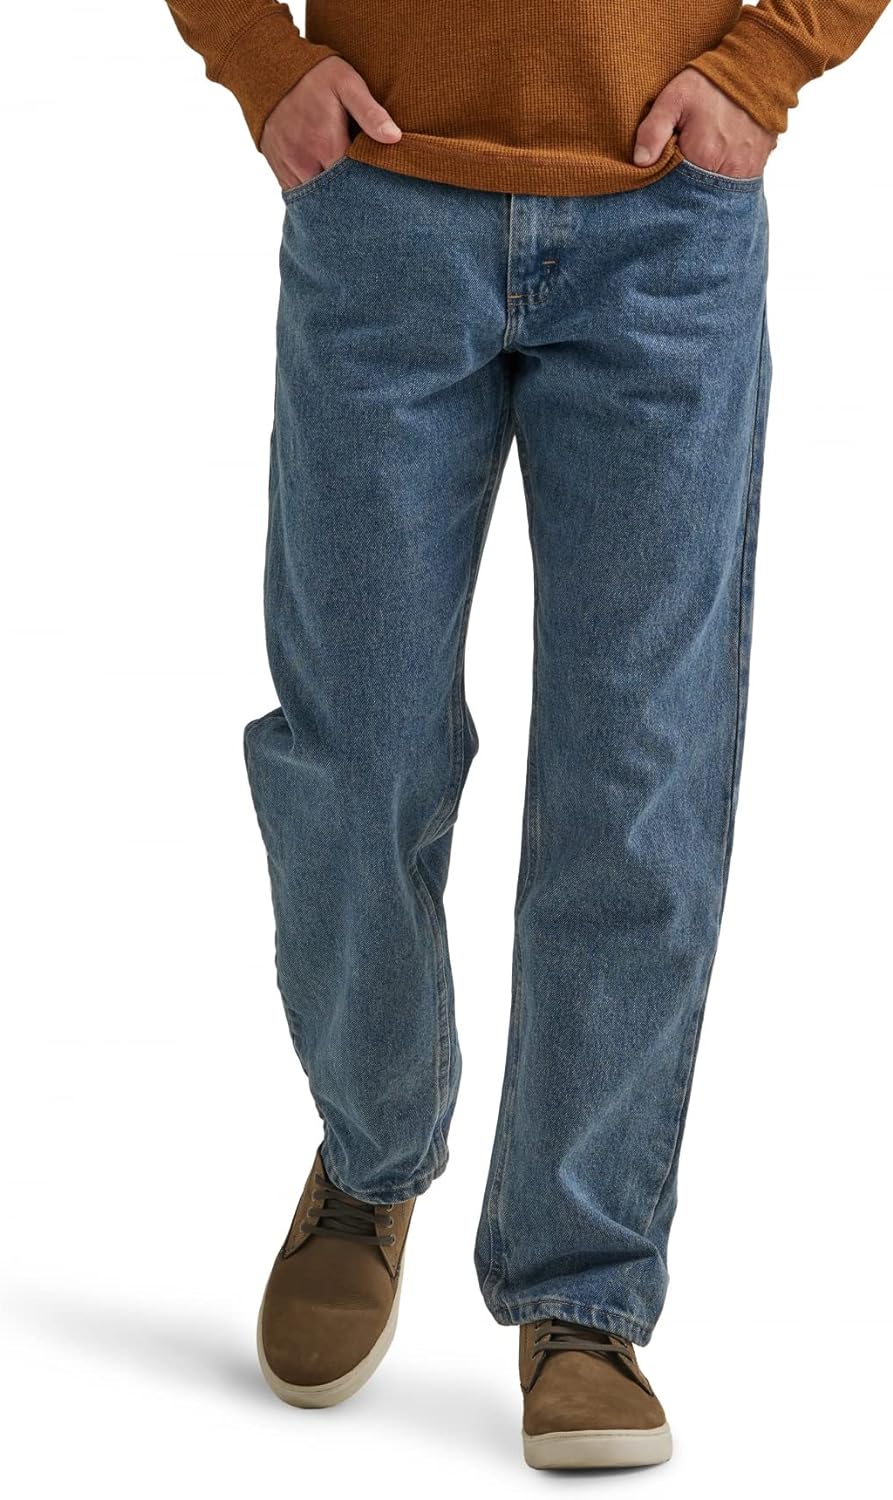 سروال جينز قطن كلاسيكي للرجال بخمسة جيوب وقصة عادية من رانجلر اوثانتيكس